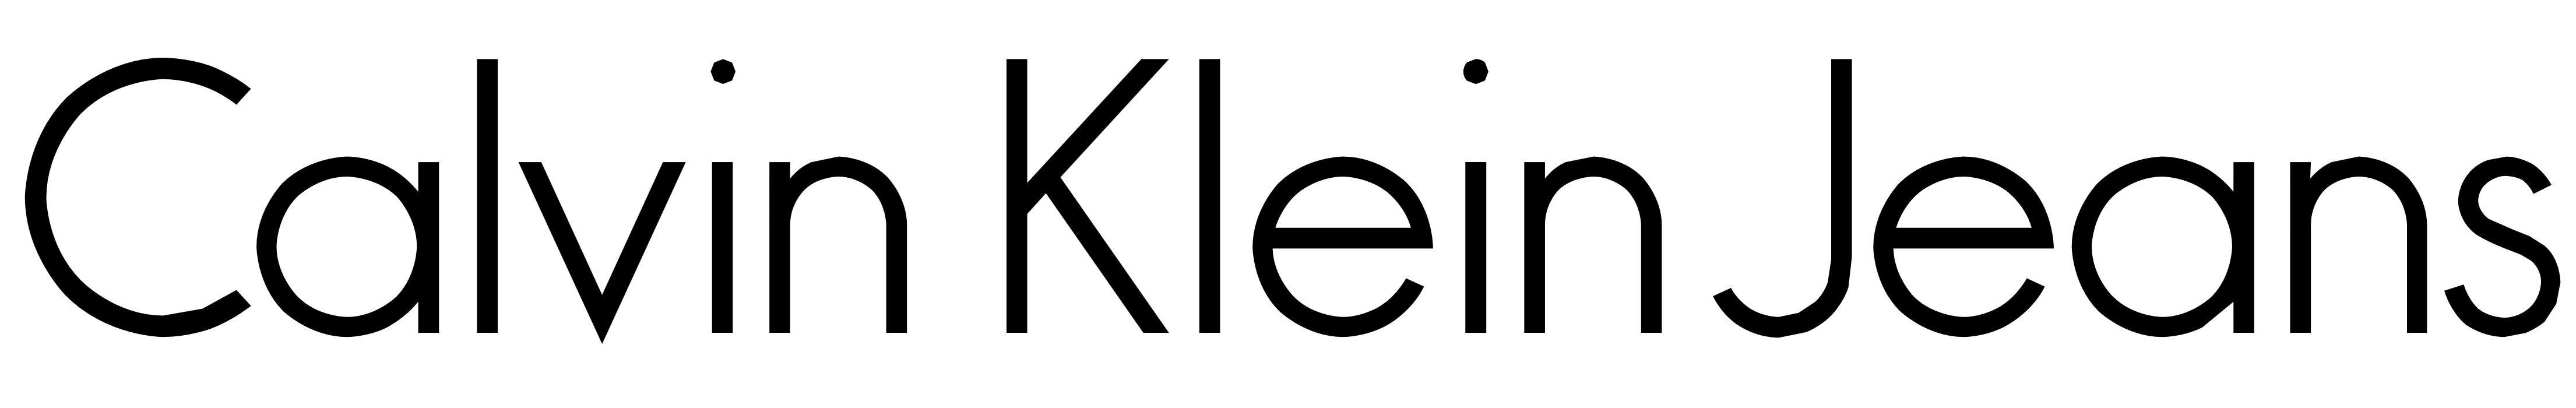 Logo Calvina Kleina